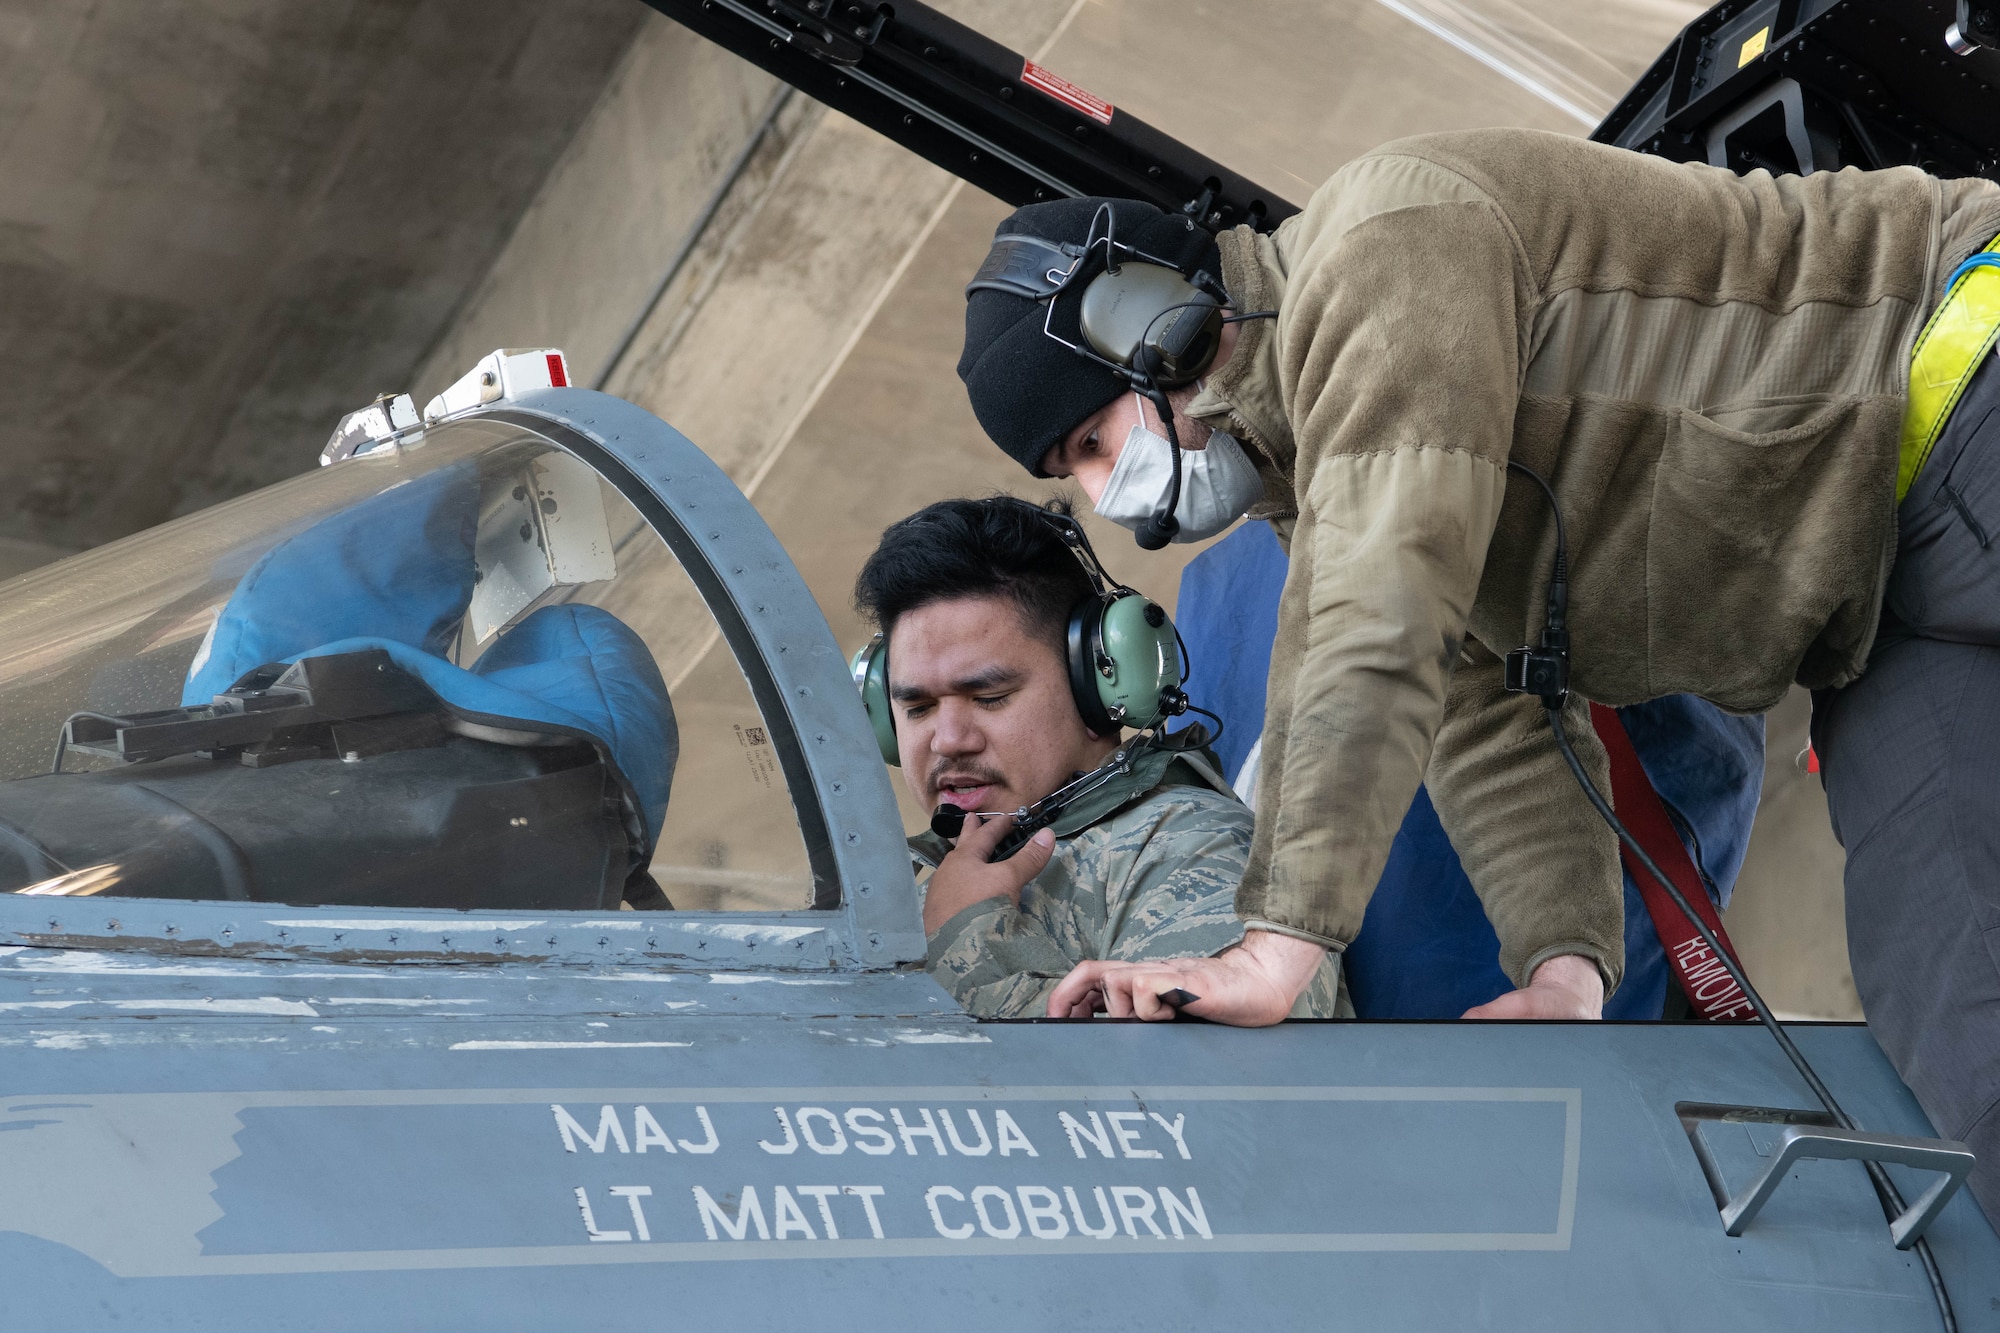 Airmen perform maintenance in an aircraft cockpit.